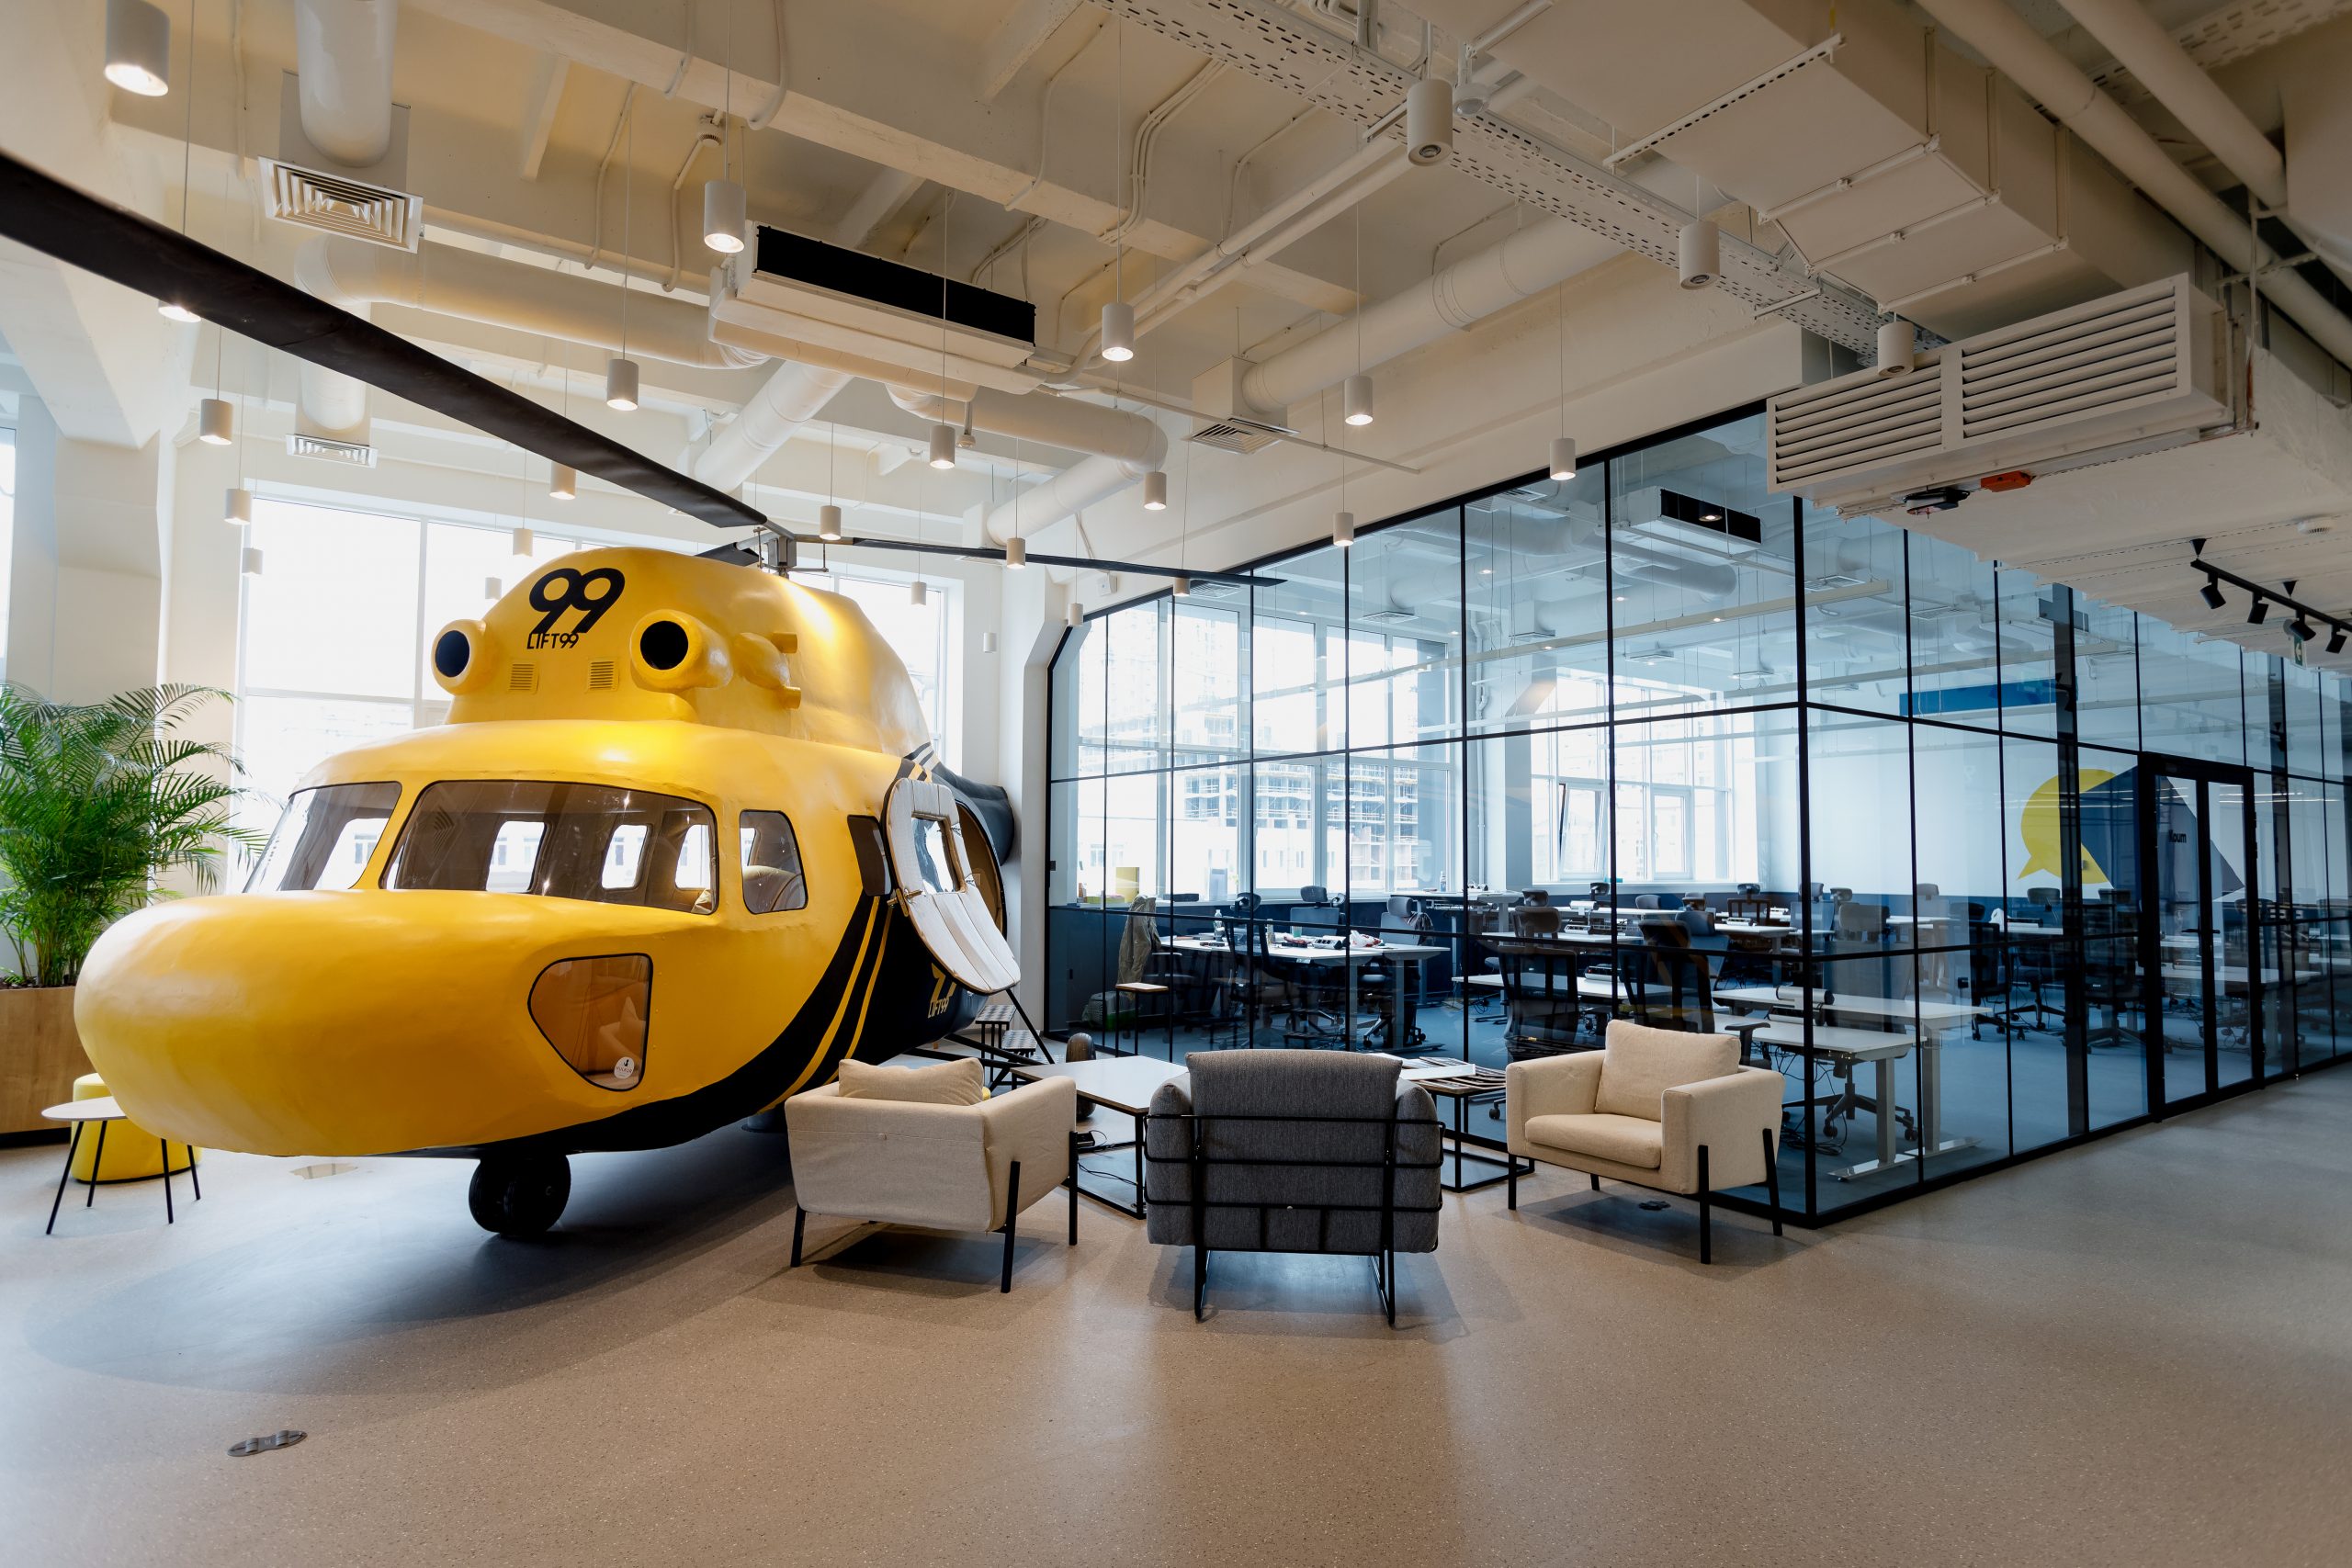 Vrtulník v kanceláři společnosti LIFT99